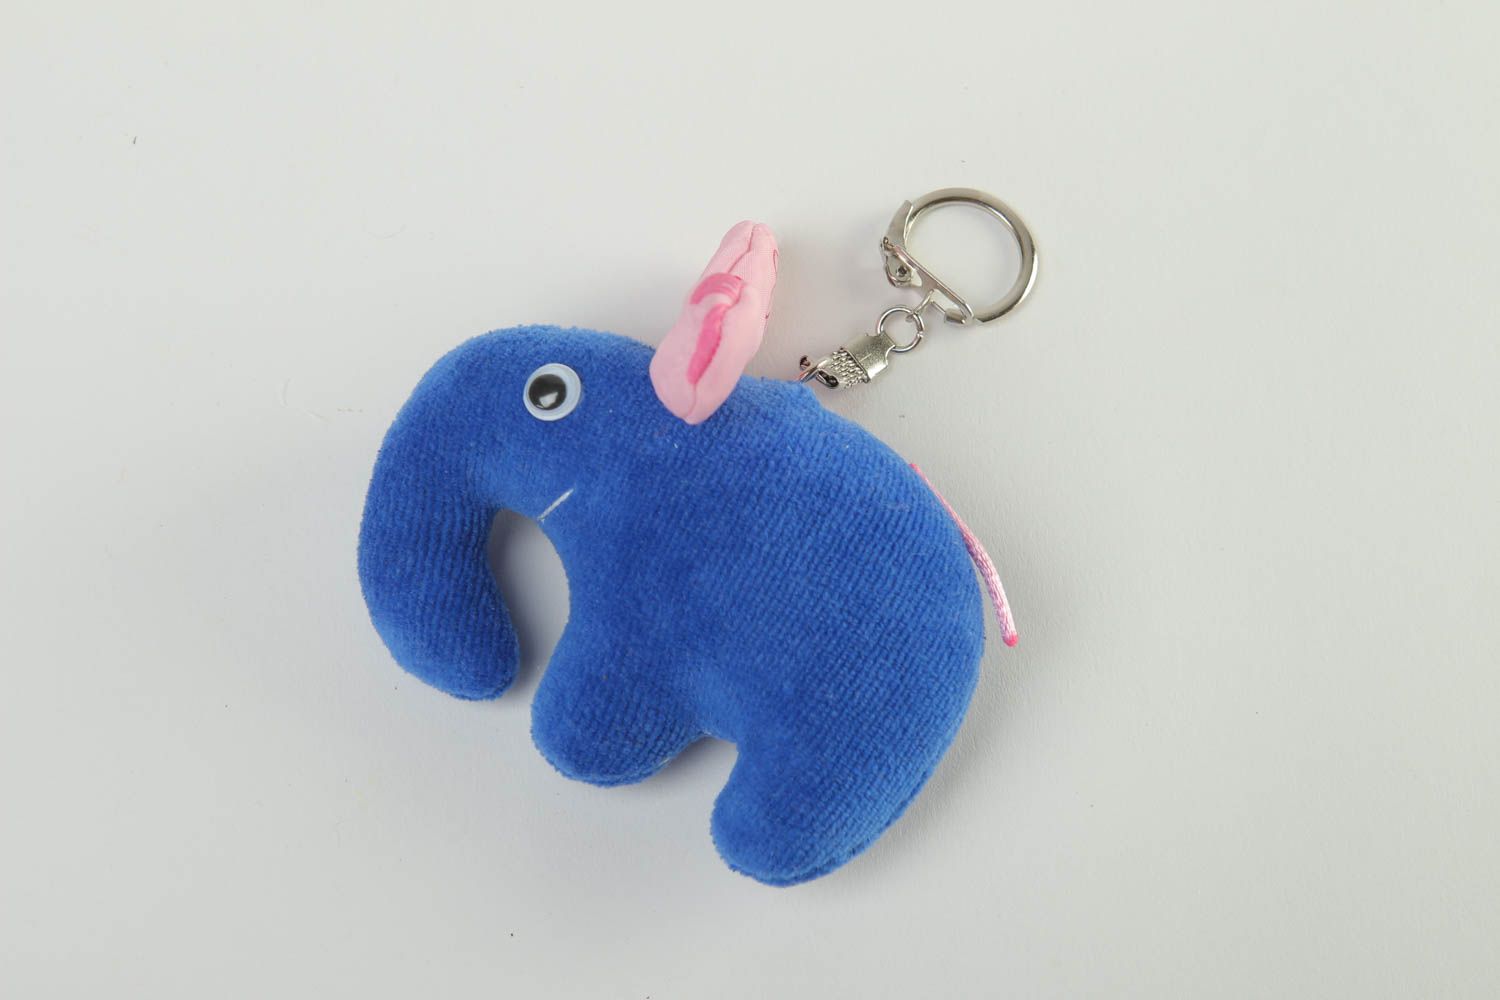 Брелок для ключей ручной работы брелок-игрушка аксессуар для ключей Синий слон фото 2